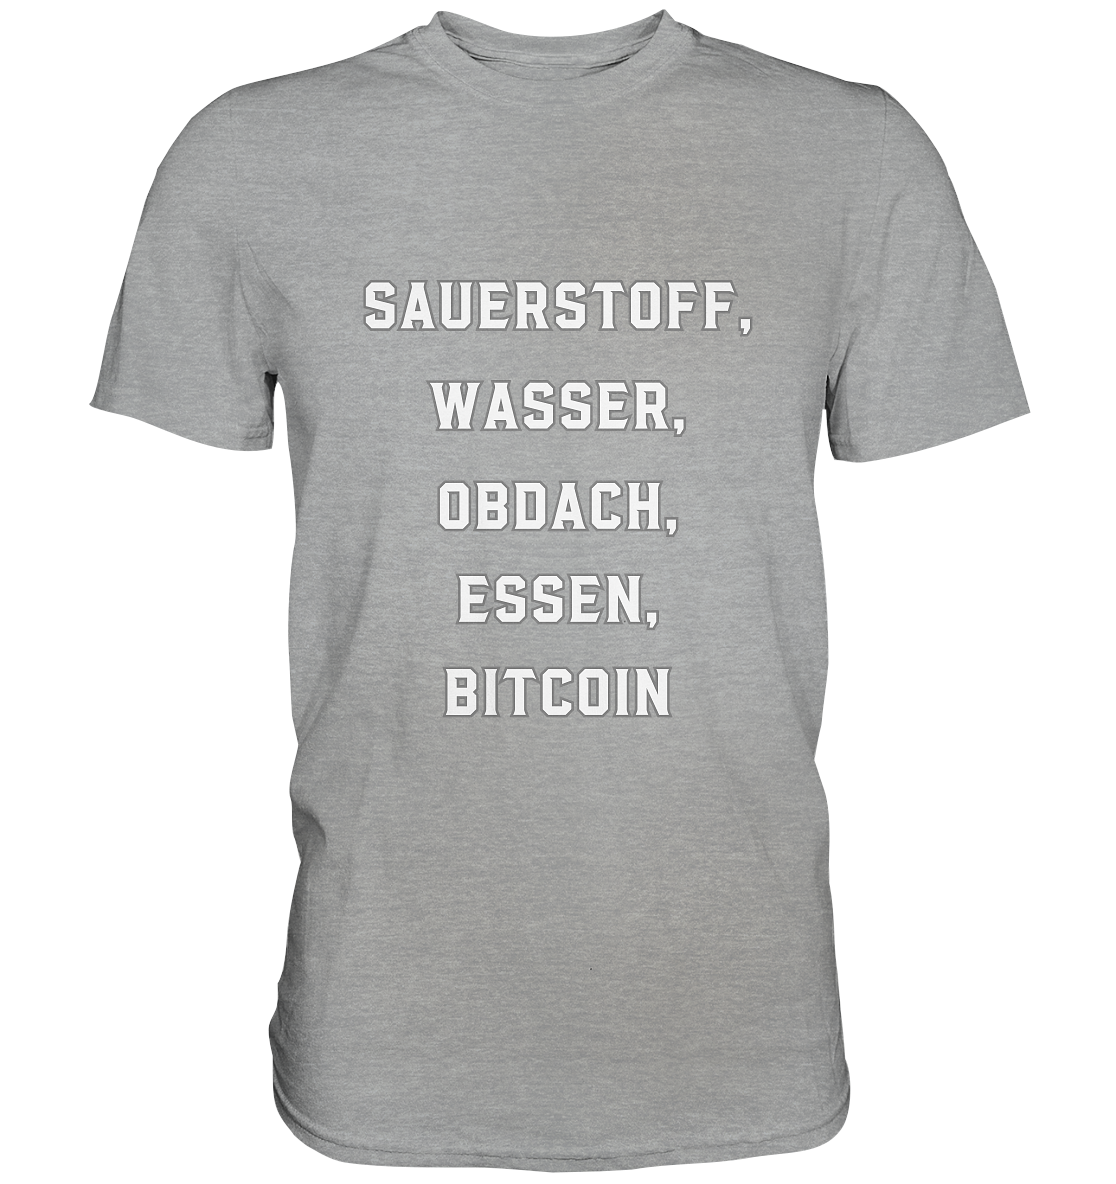 SAUERSTOFF, WASSER, OBDACH, ESSEN, BITCOIN - Classic Shirt